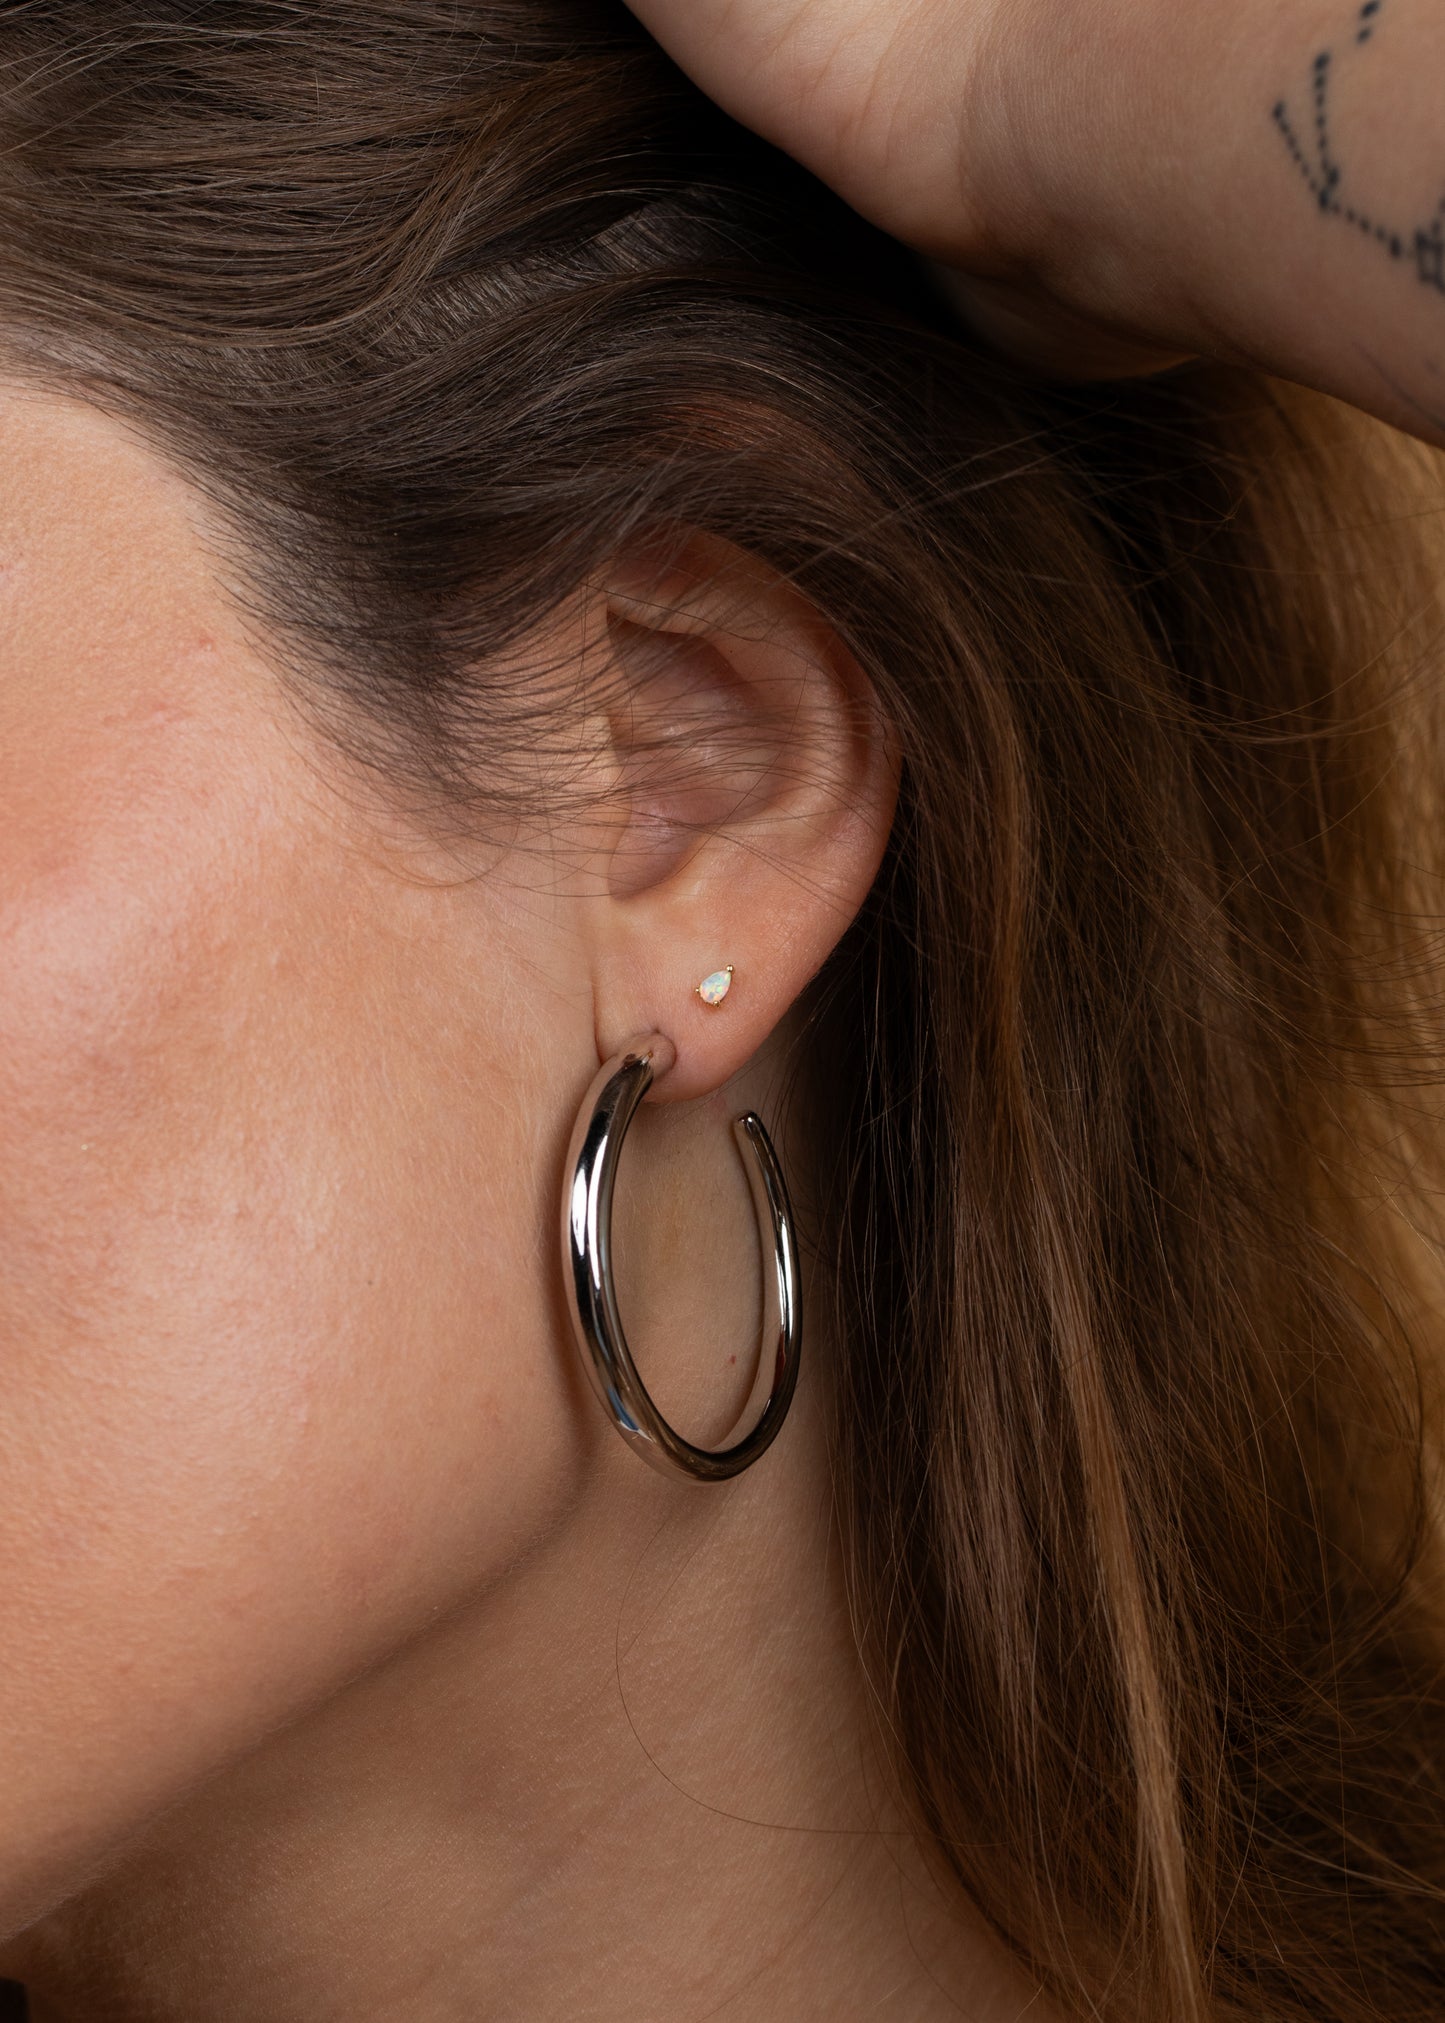 Teardrop Earring - White Opal